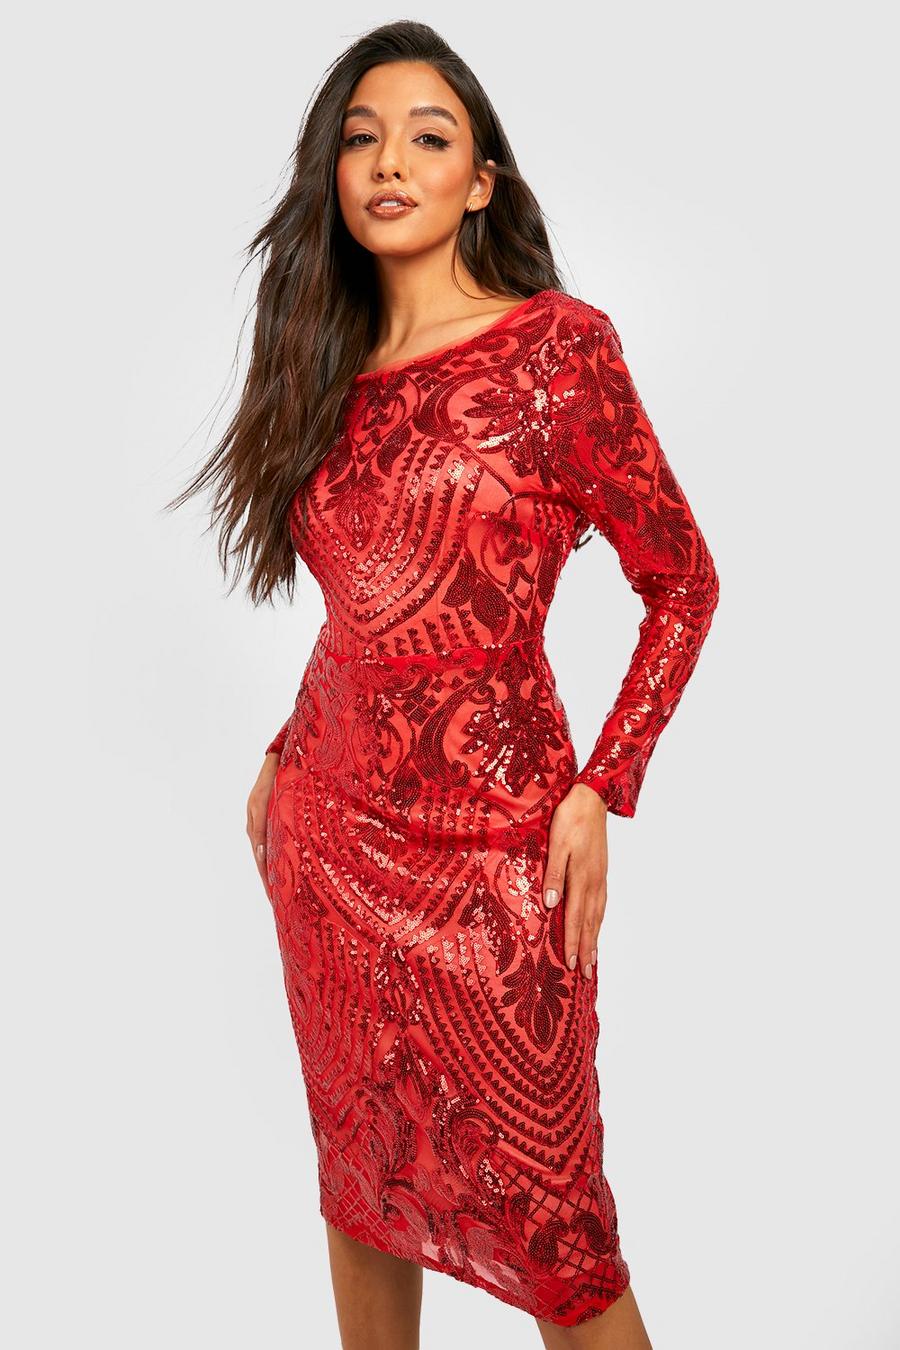 Red שמלת מידי למסיבות מבד דמשק עם פייטים ומחשוף גב נשפך